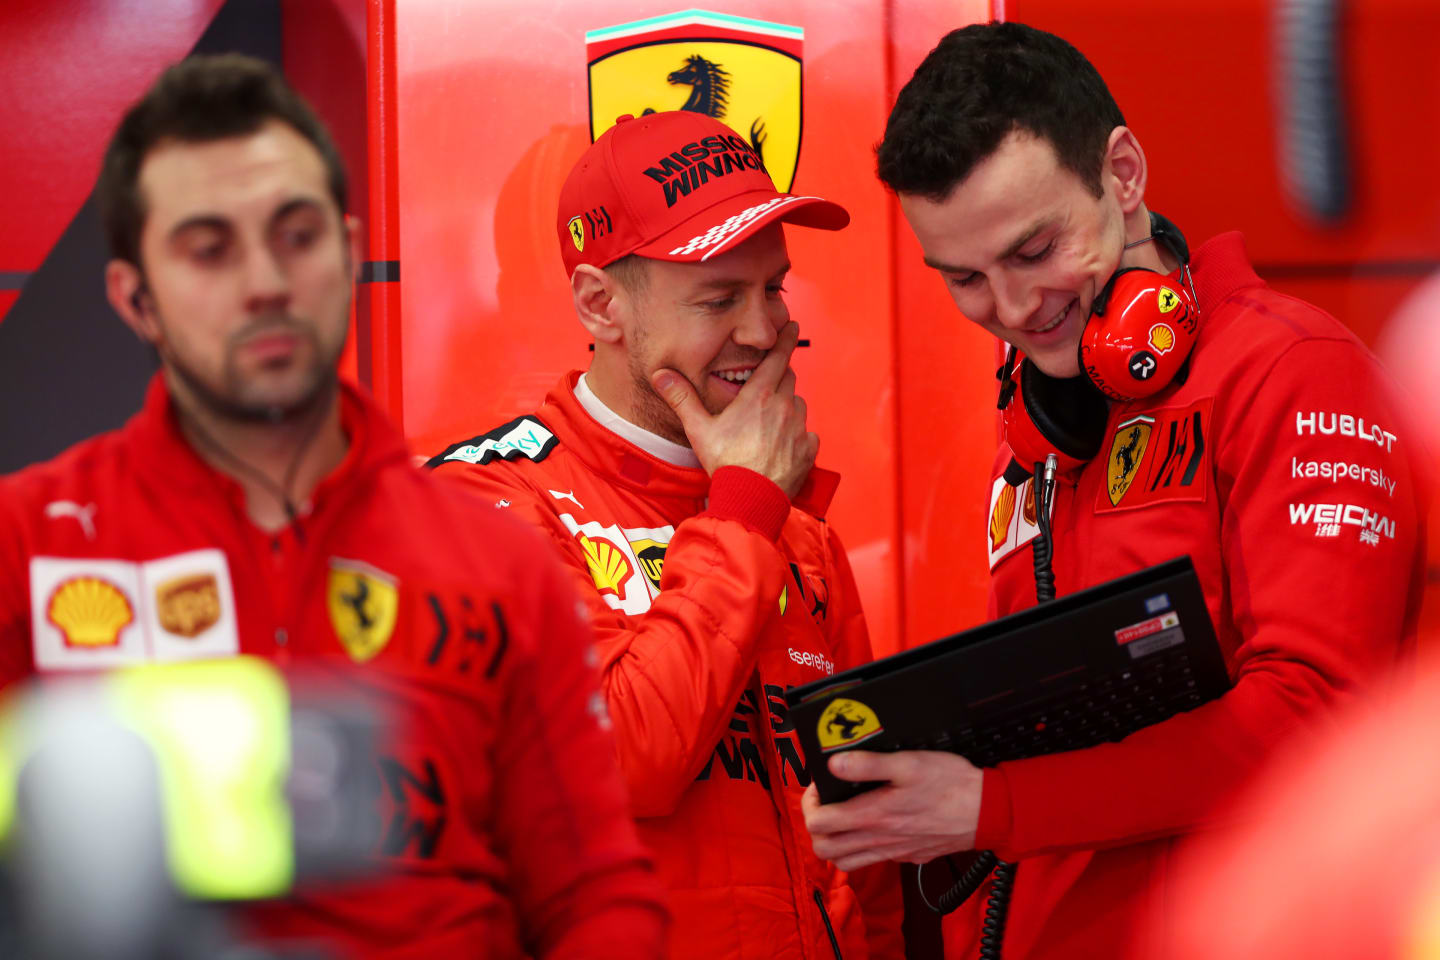 BARCELONA, SPAIN - FEBRUARY 21: Sebastian Vettel of Germany and Ferrari speaks to a Ferrari team